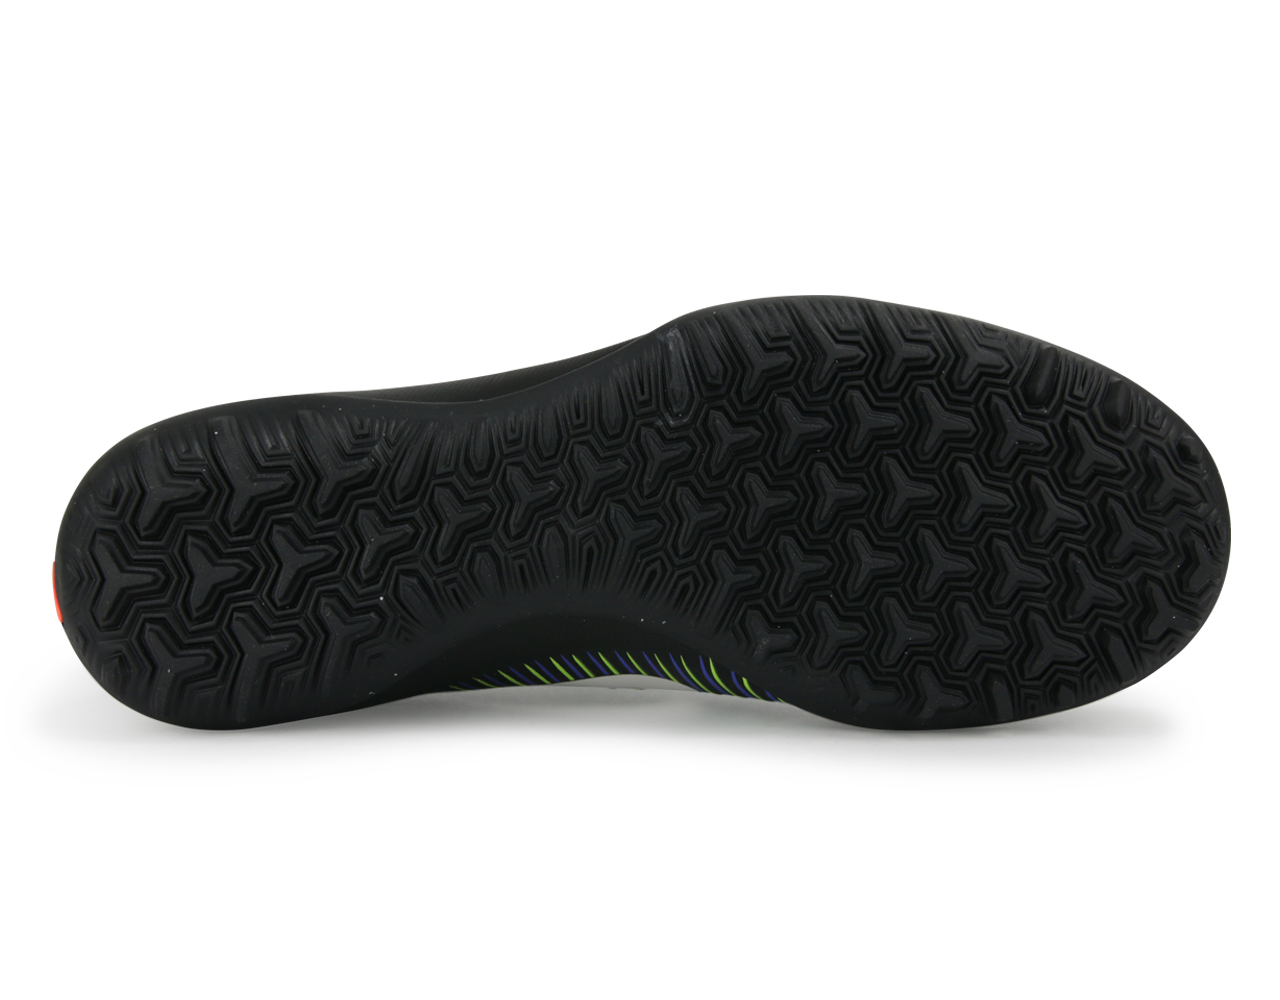 Nike Kids MercurialX Vapor VI Turf Shoes Black/White/Electric Green